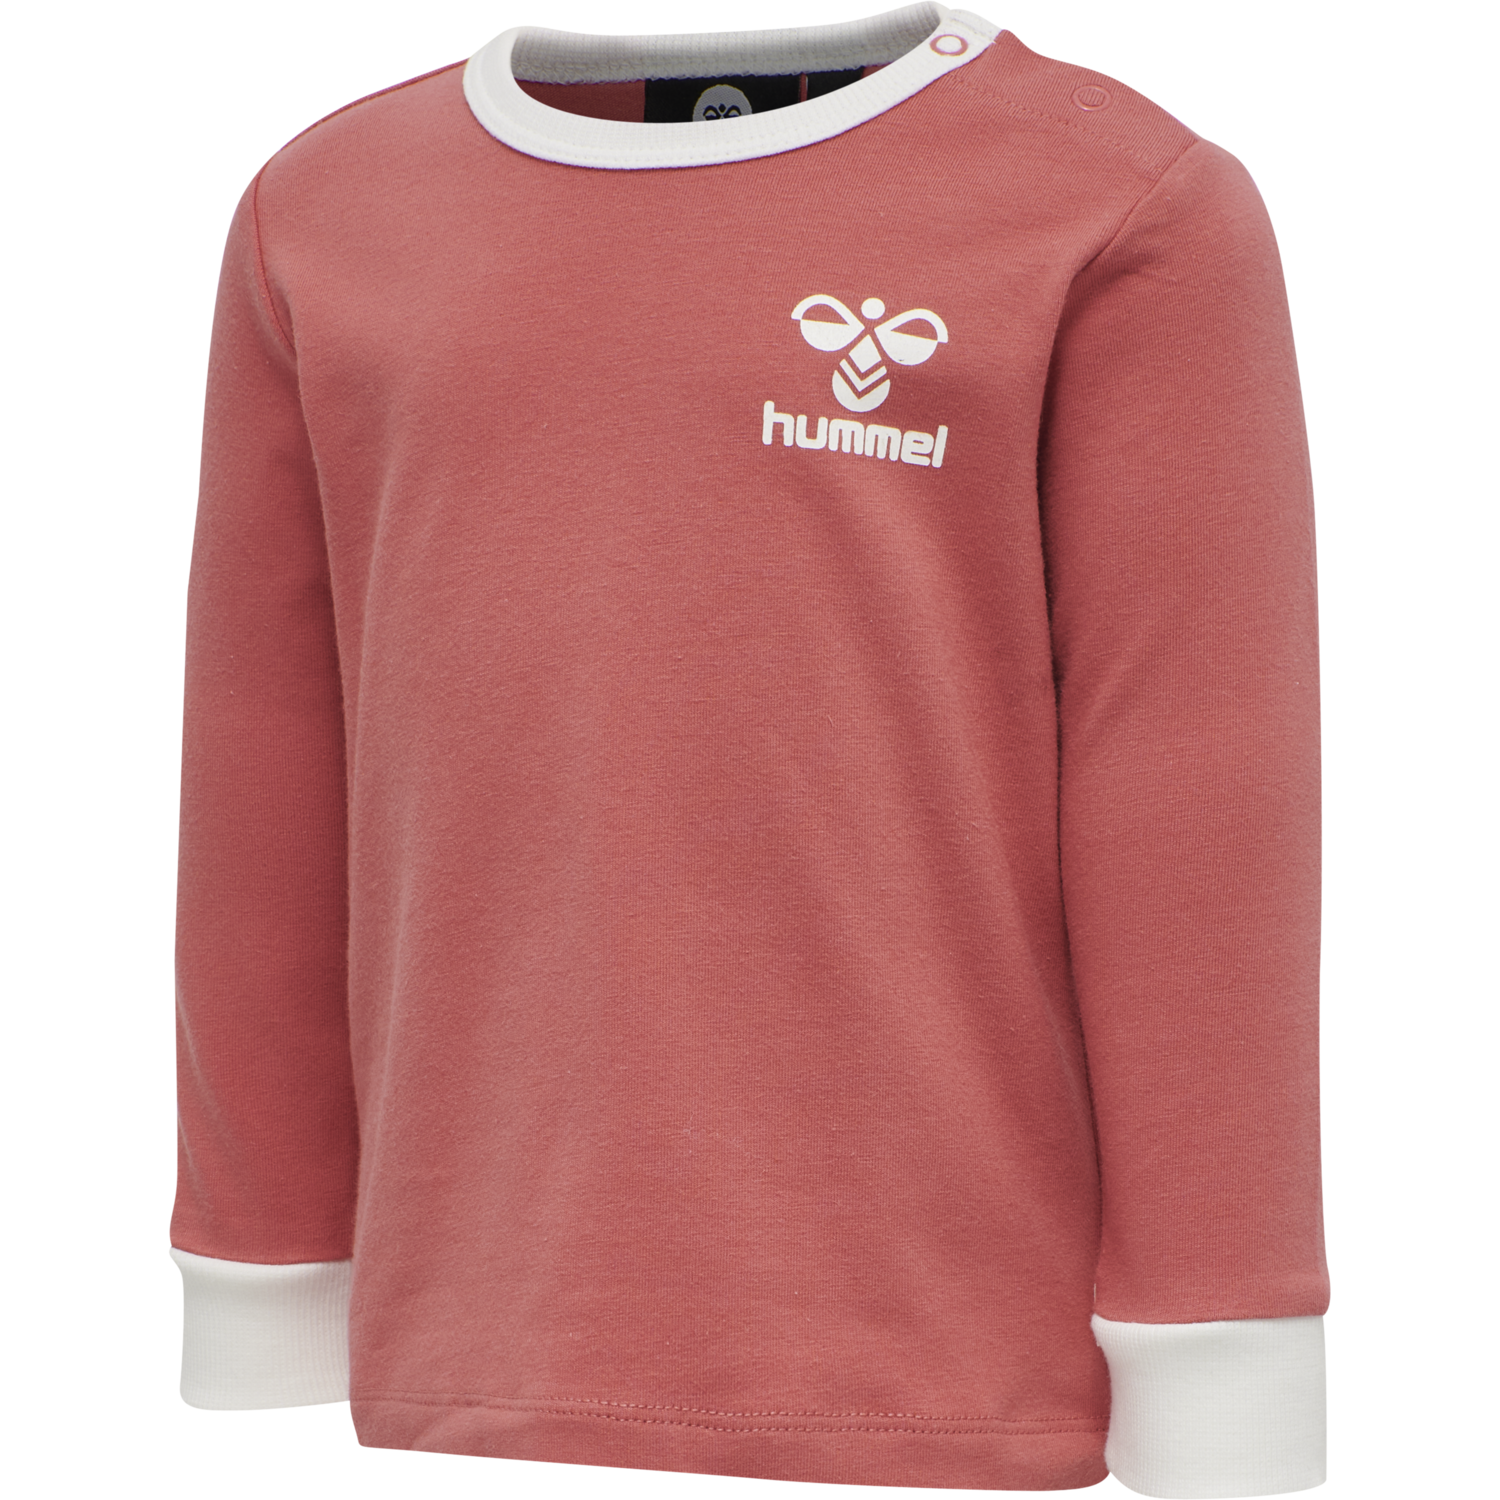 Details about   Hummel Kids Sport Training Casual Cotton Short Sleeve SS T-Shirt Tee Regular Fit